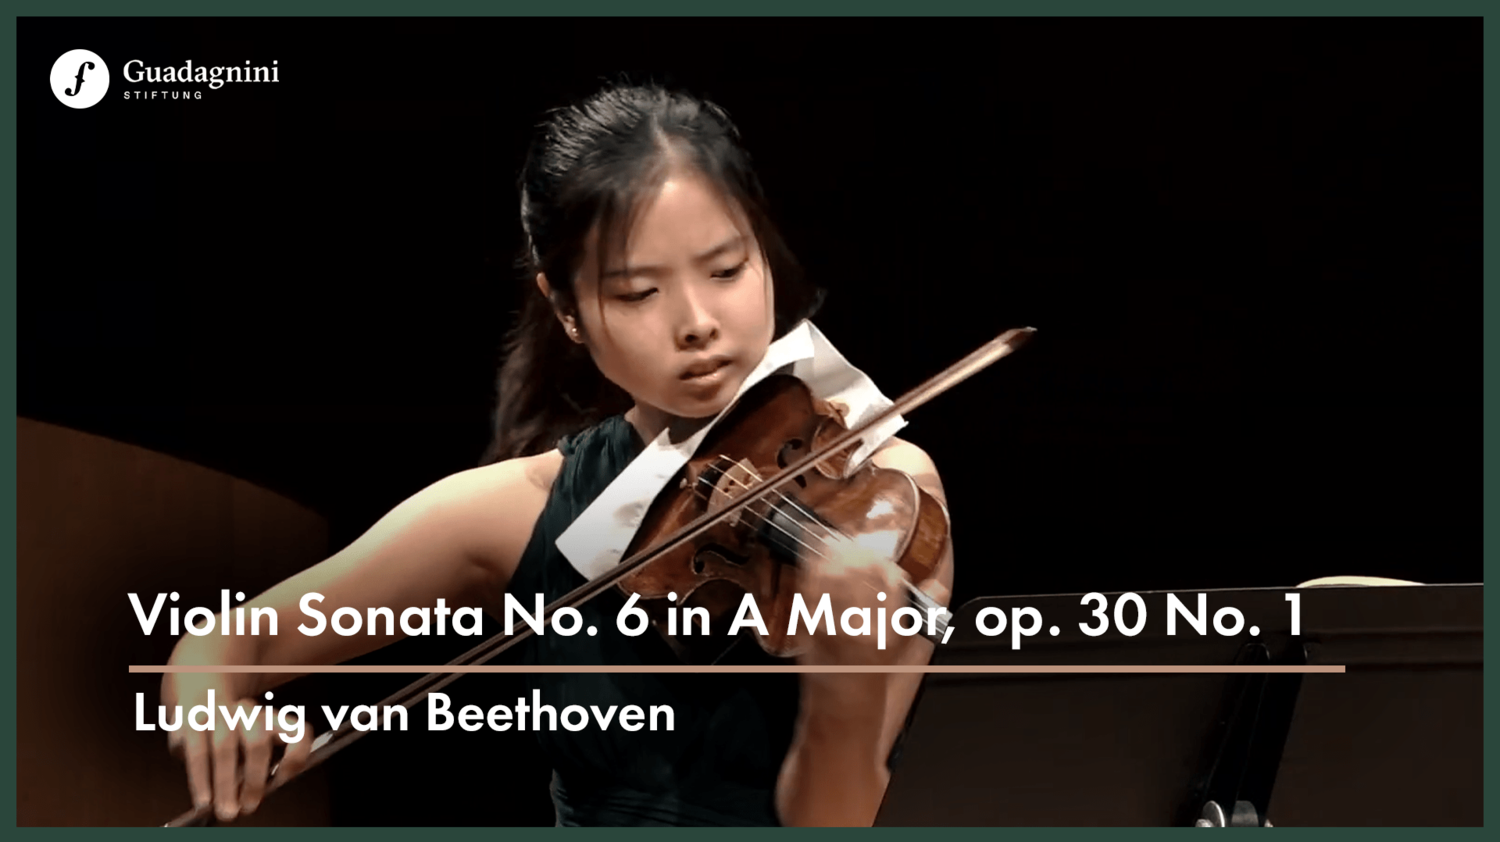 Hana Chang plays L.v. Beethoven